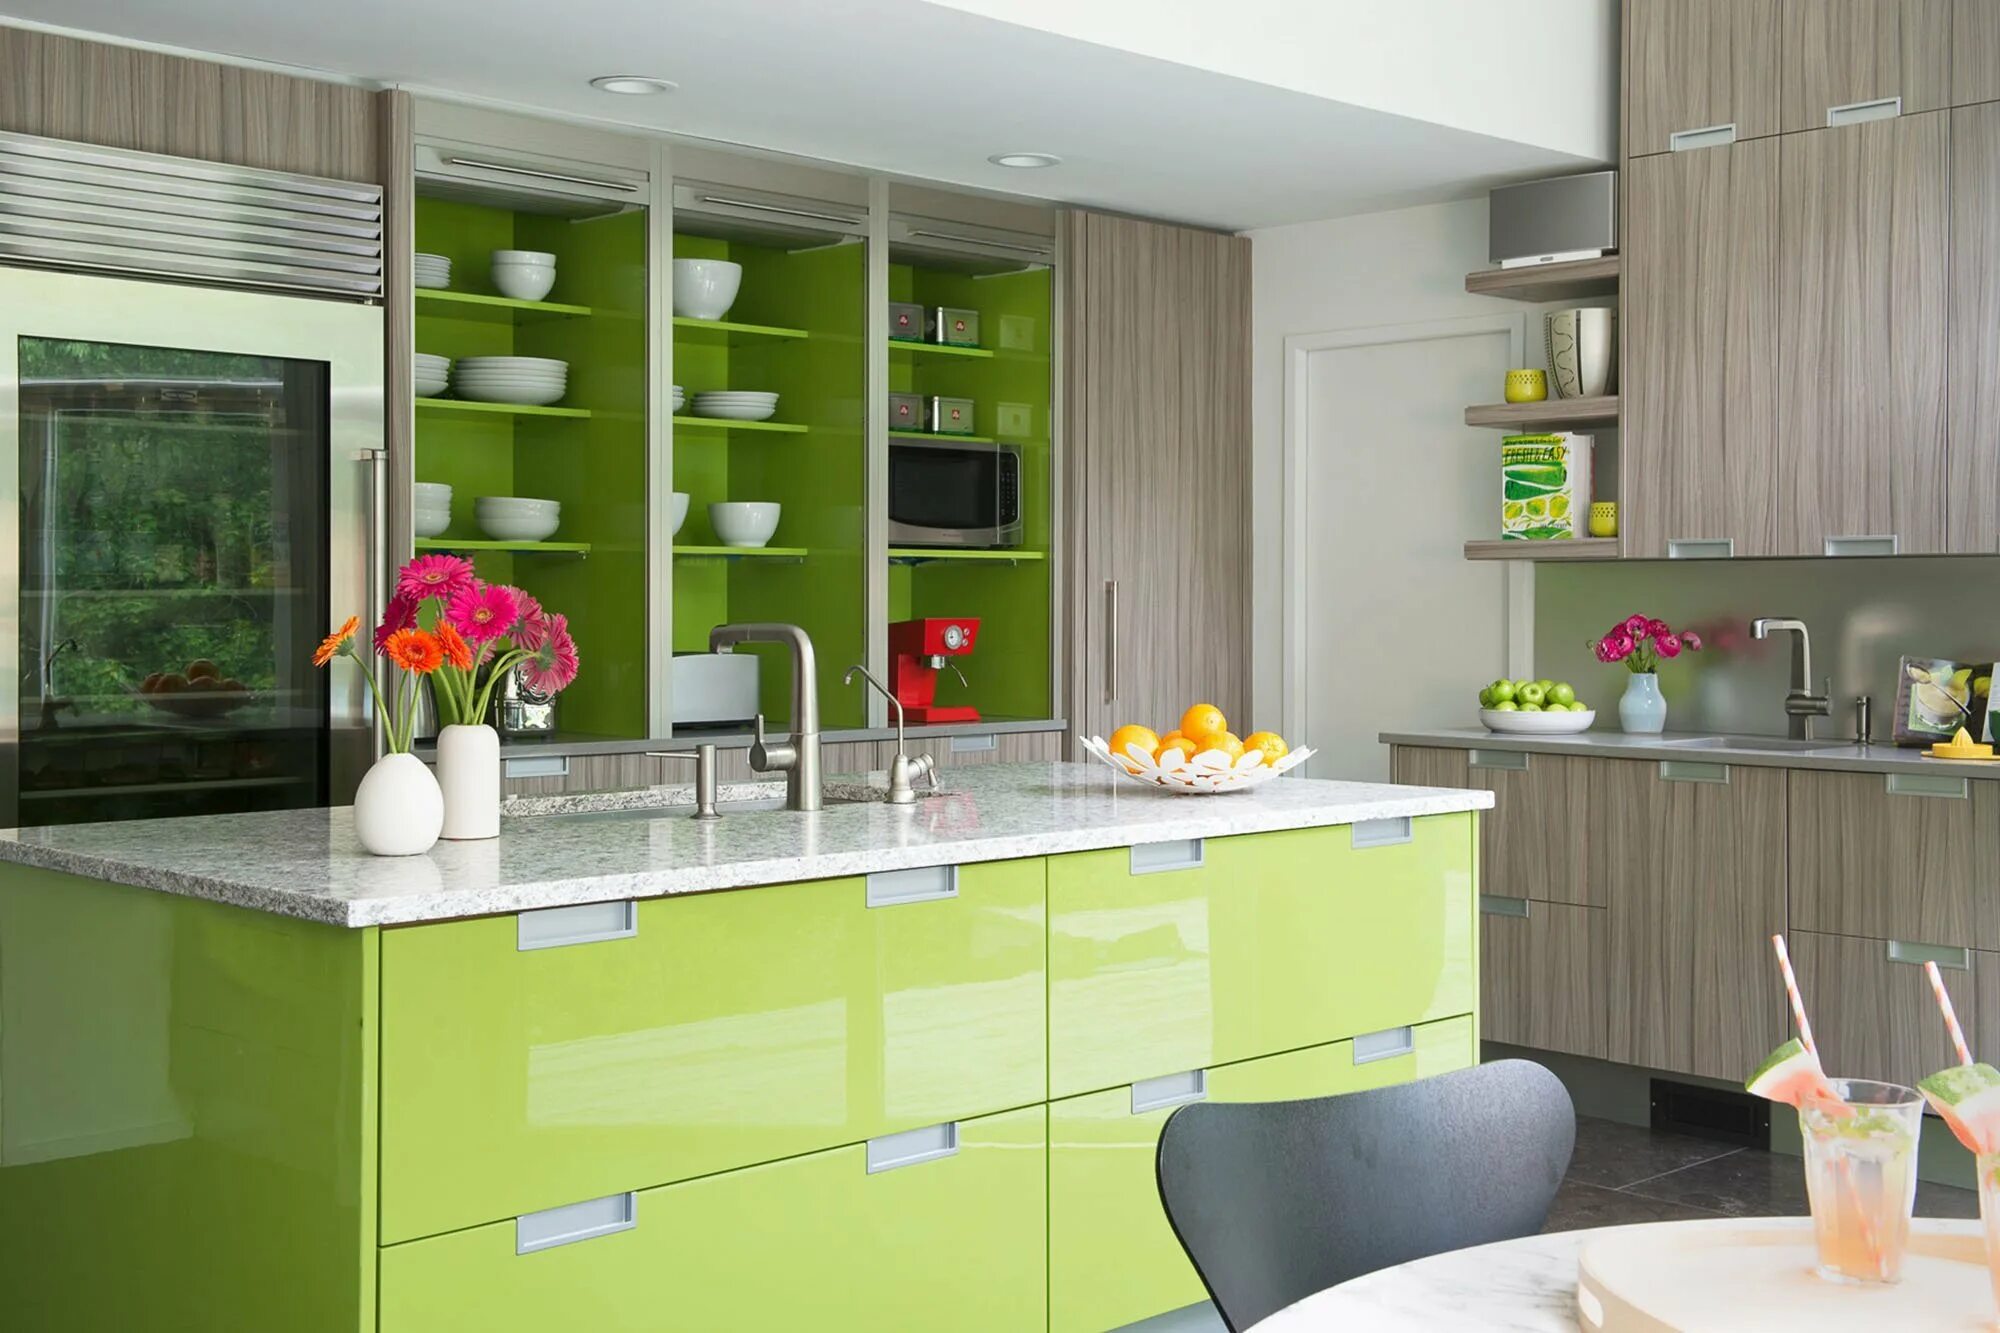 Какие цвета сочетаются на кухне. Интерьер кухни. Кухня в салатовом цвете. Кухня в зеленых тонах. Сочетание цветов на кухне.